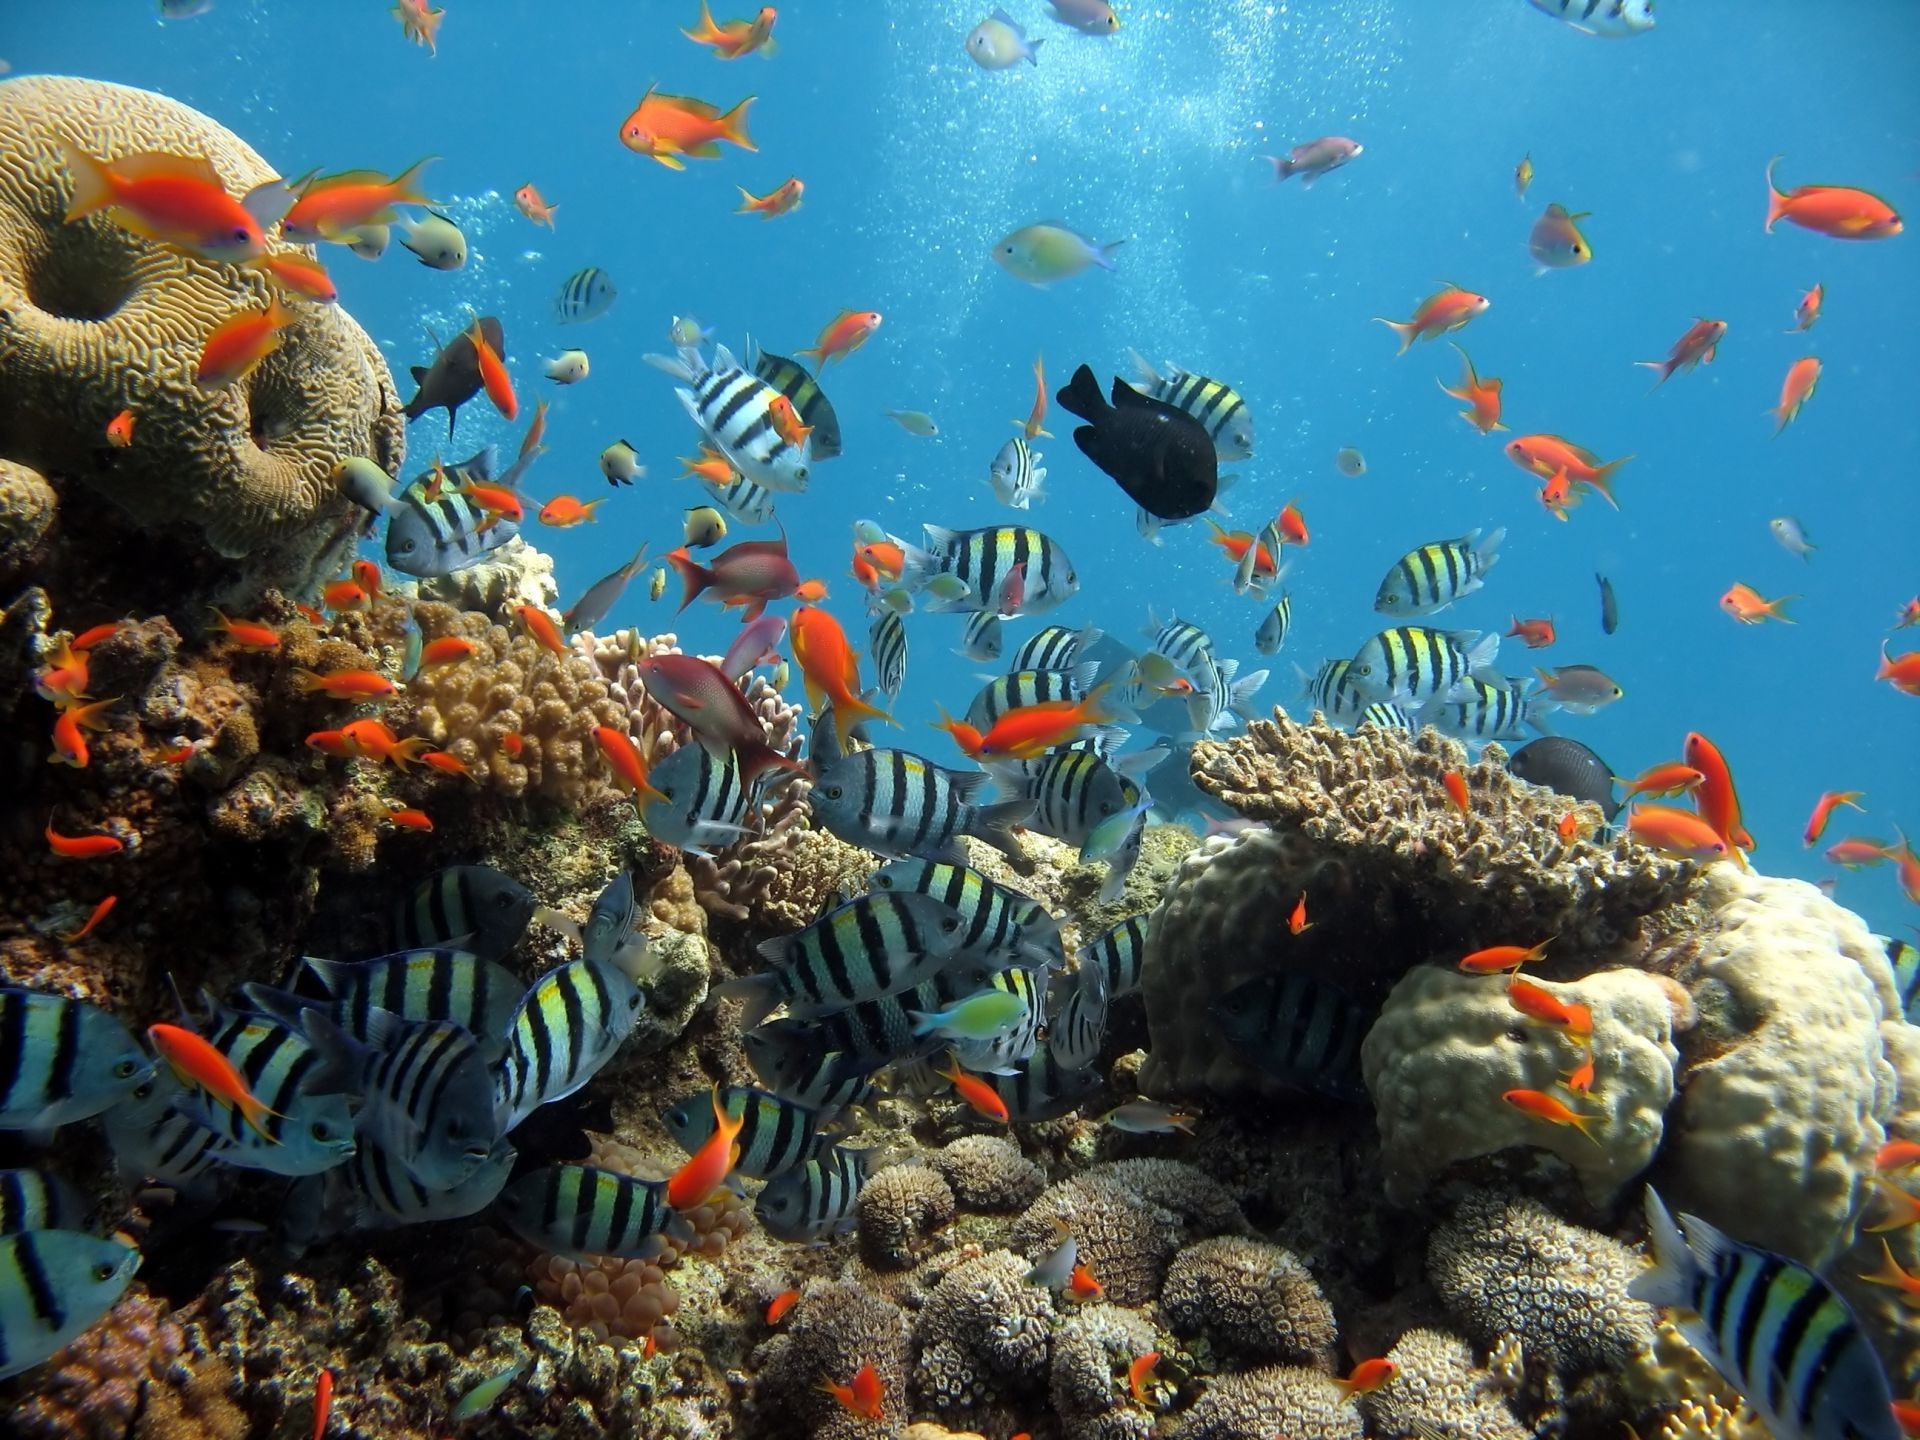 животные подводный рыбы аквариум коралловый риф тропический морской плавание золотая рыбка океан водный дайвинг море воды глубокий скуба экзотические беспозвоночных соленой воды танк